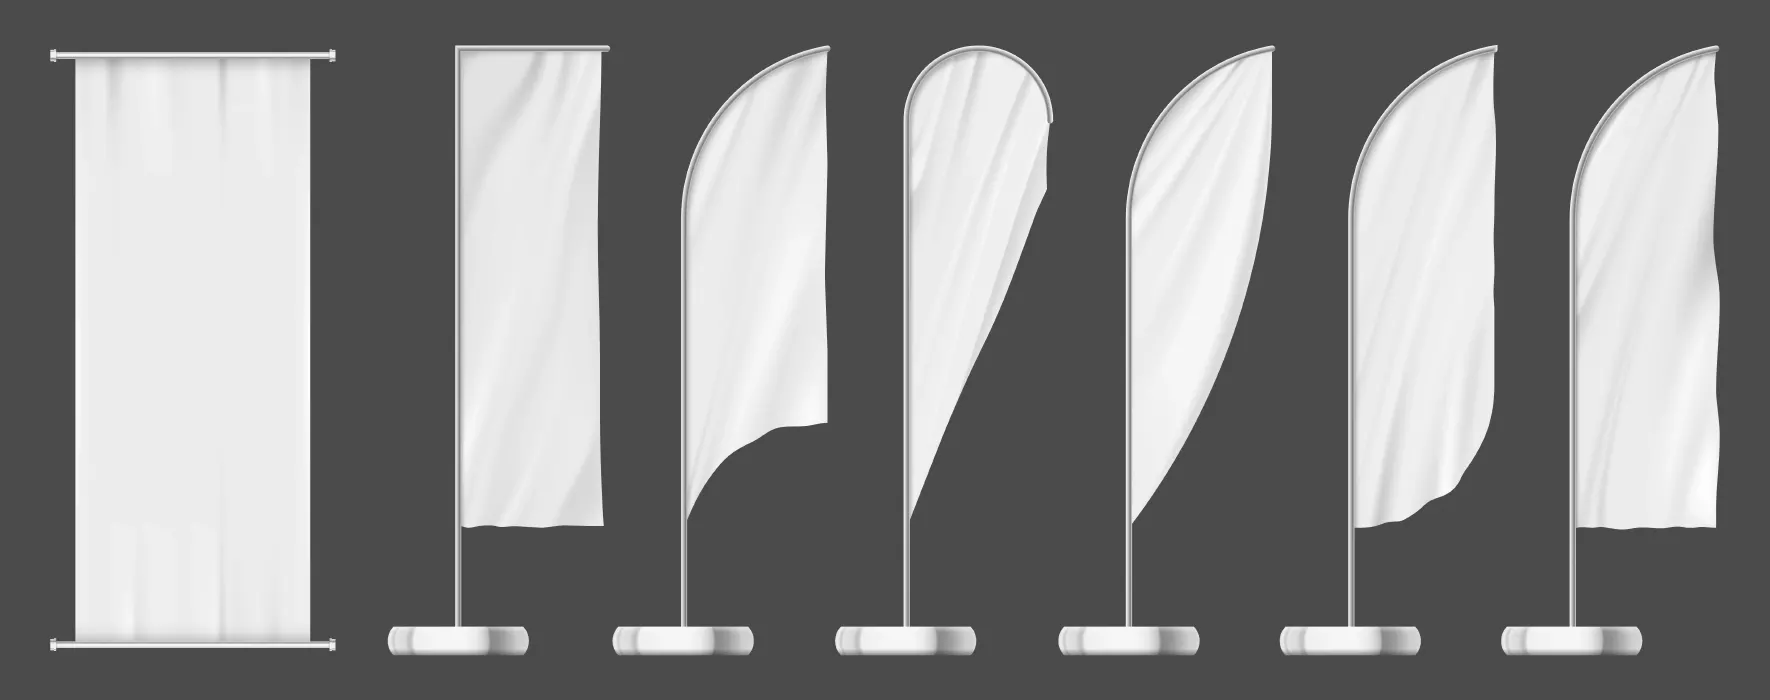 دانلود وکتور مجموعه پرچم های سفید تبلیغات شهری